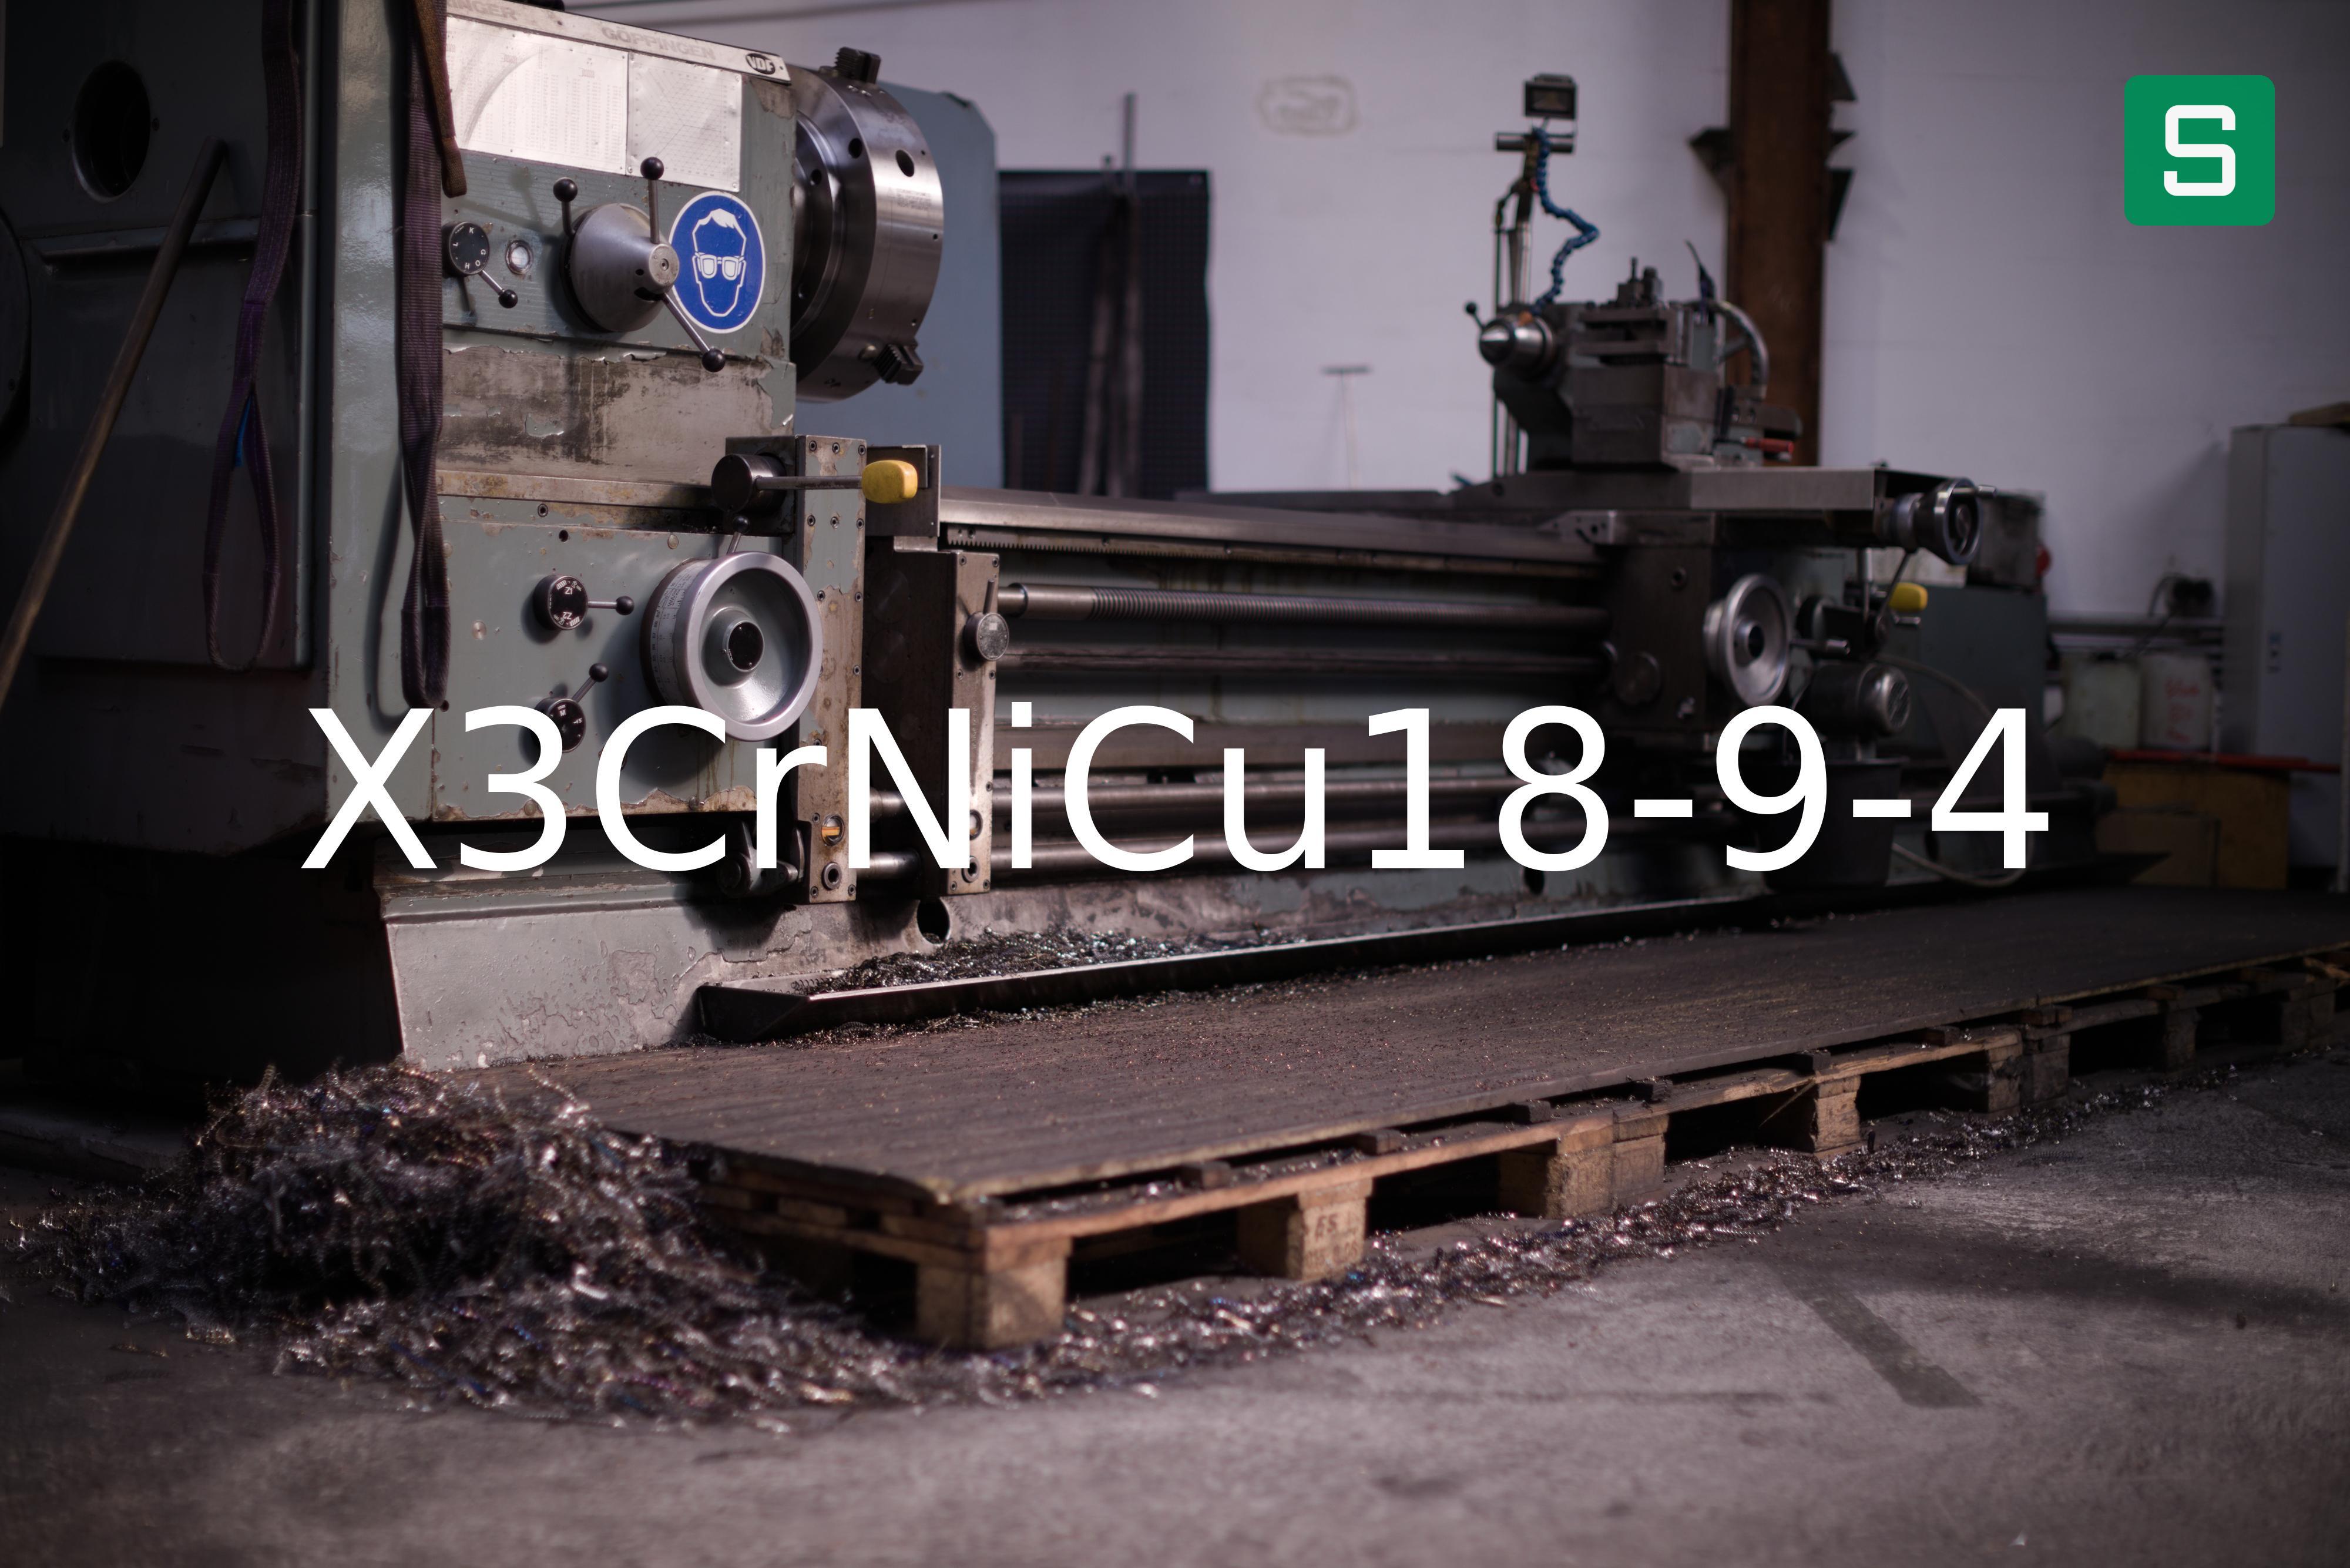 Steel Material: X3CrNiCu18-9-4